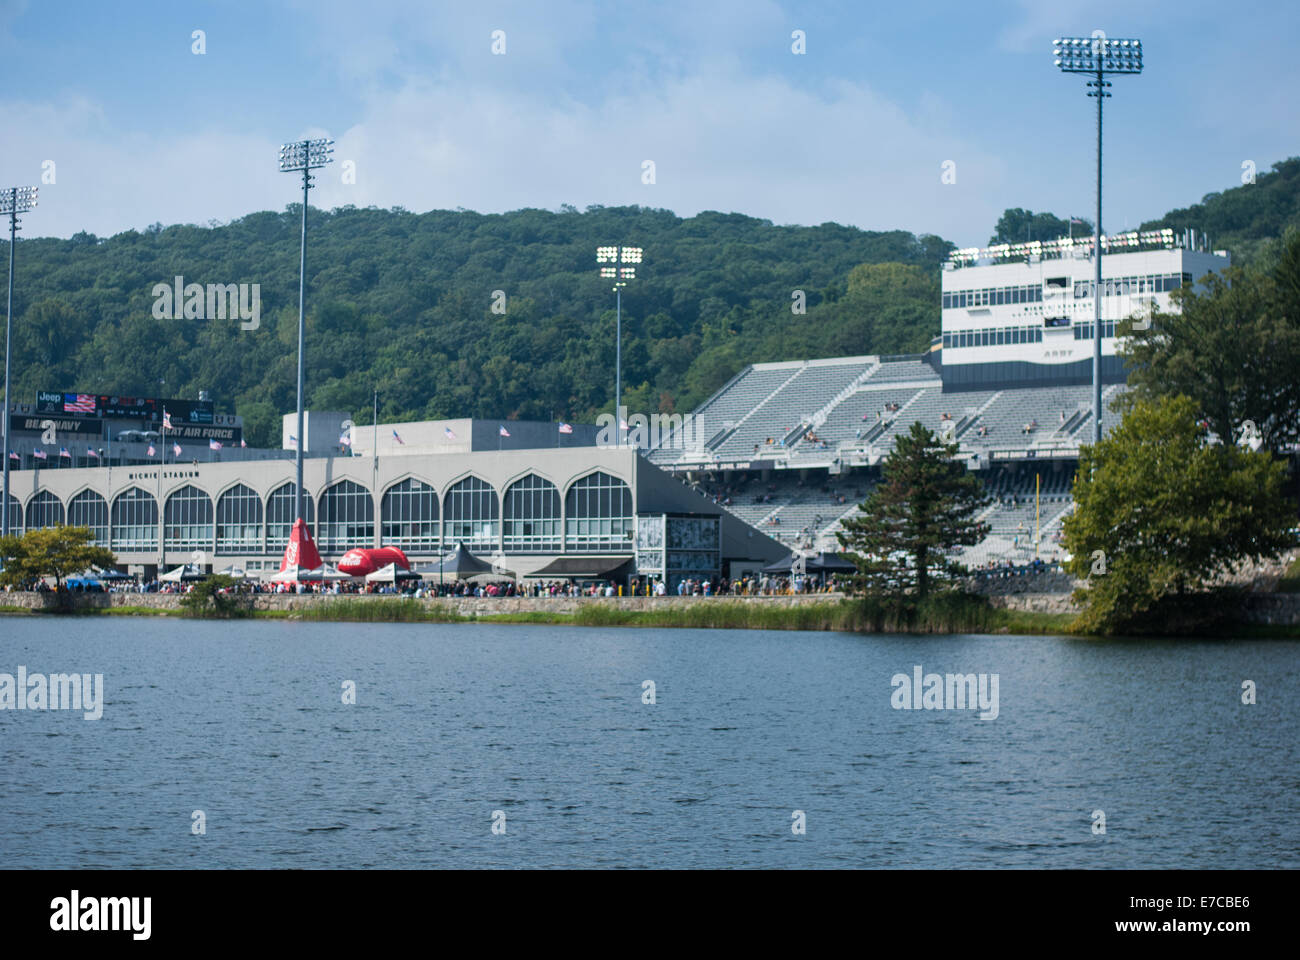 Una academia militar de los Estados Unidos partido de fútbol jugado en Mitchi Stadium en West Point, NY Foto de stock